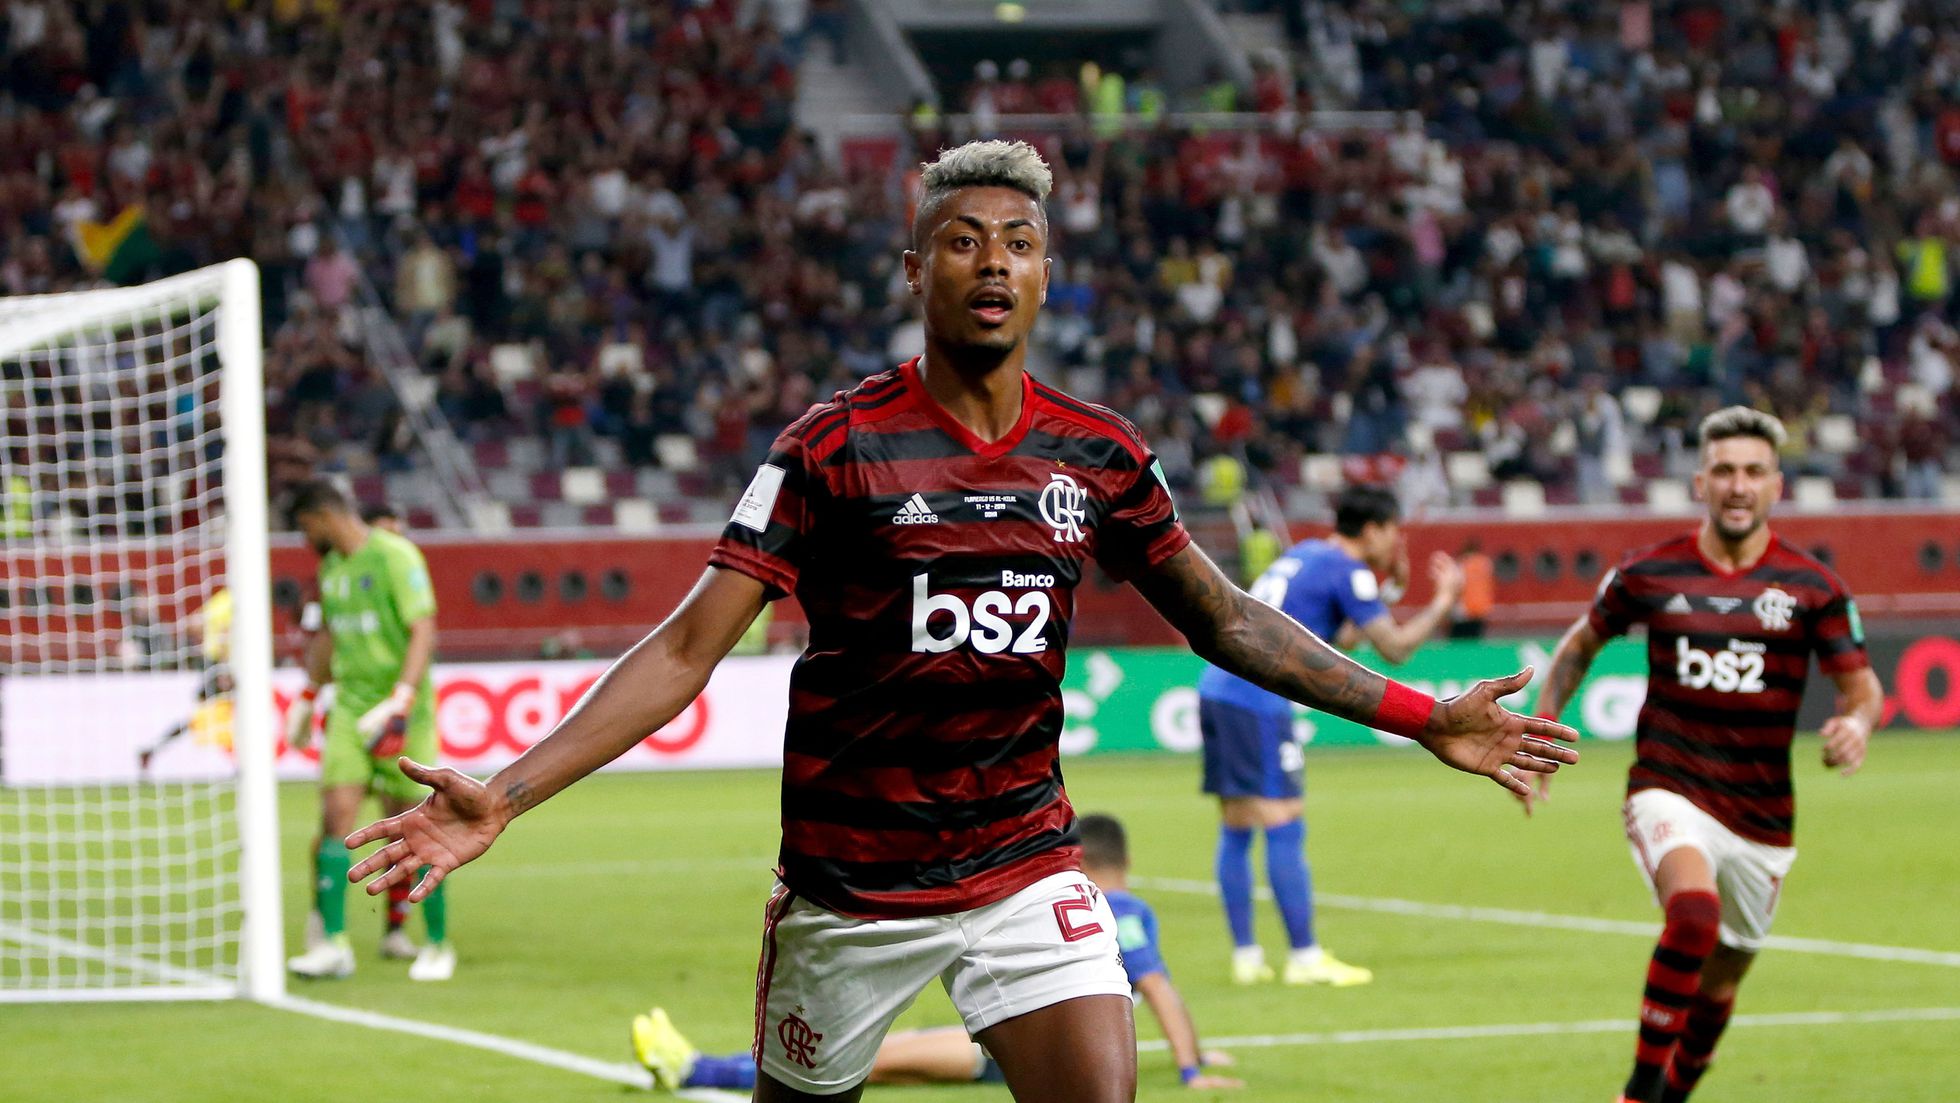 Flamengo quer time com 'fome de título' em semifinal contra o Al Hilal no  Mundial